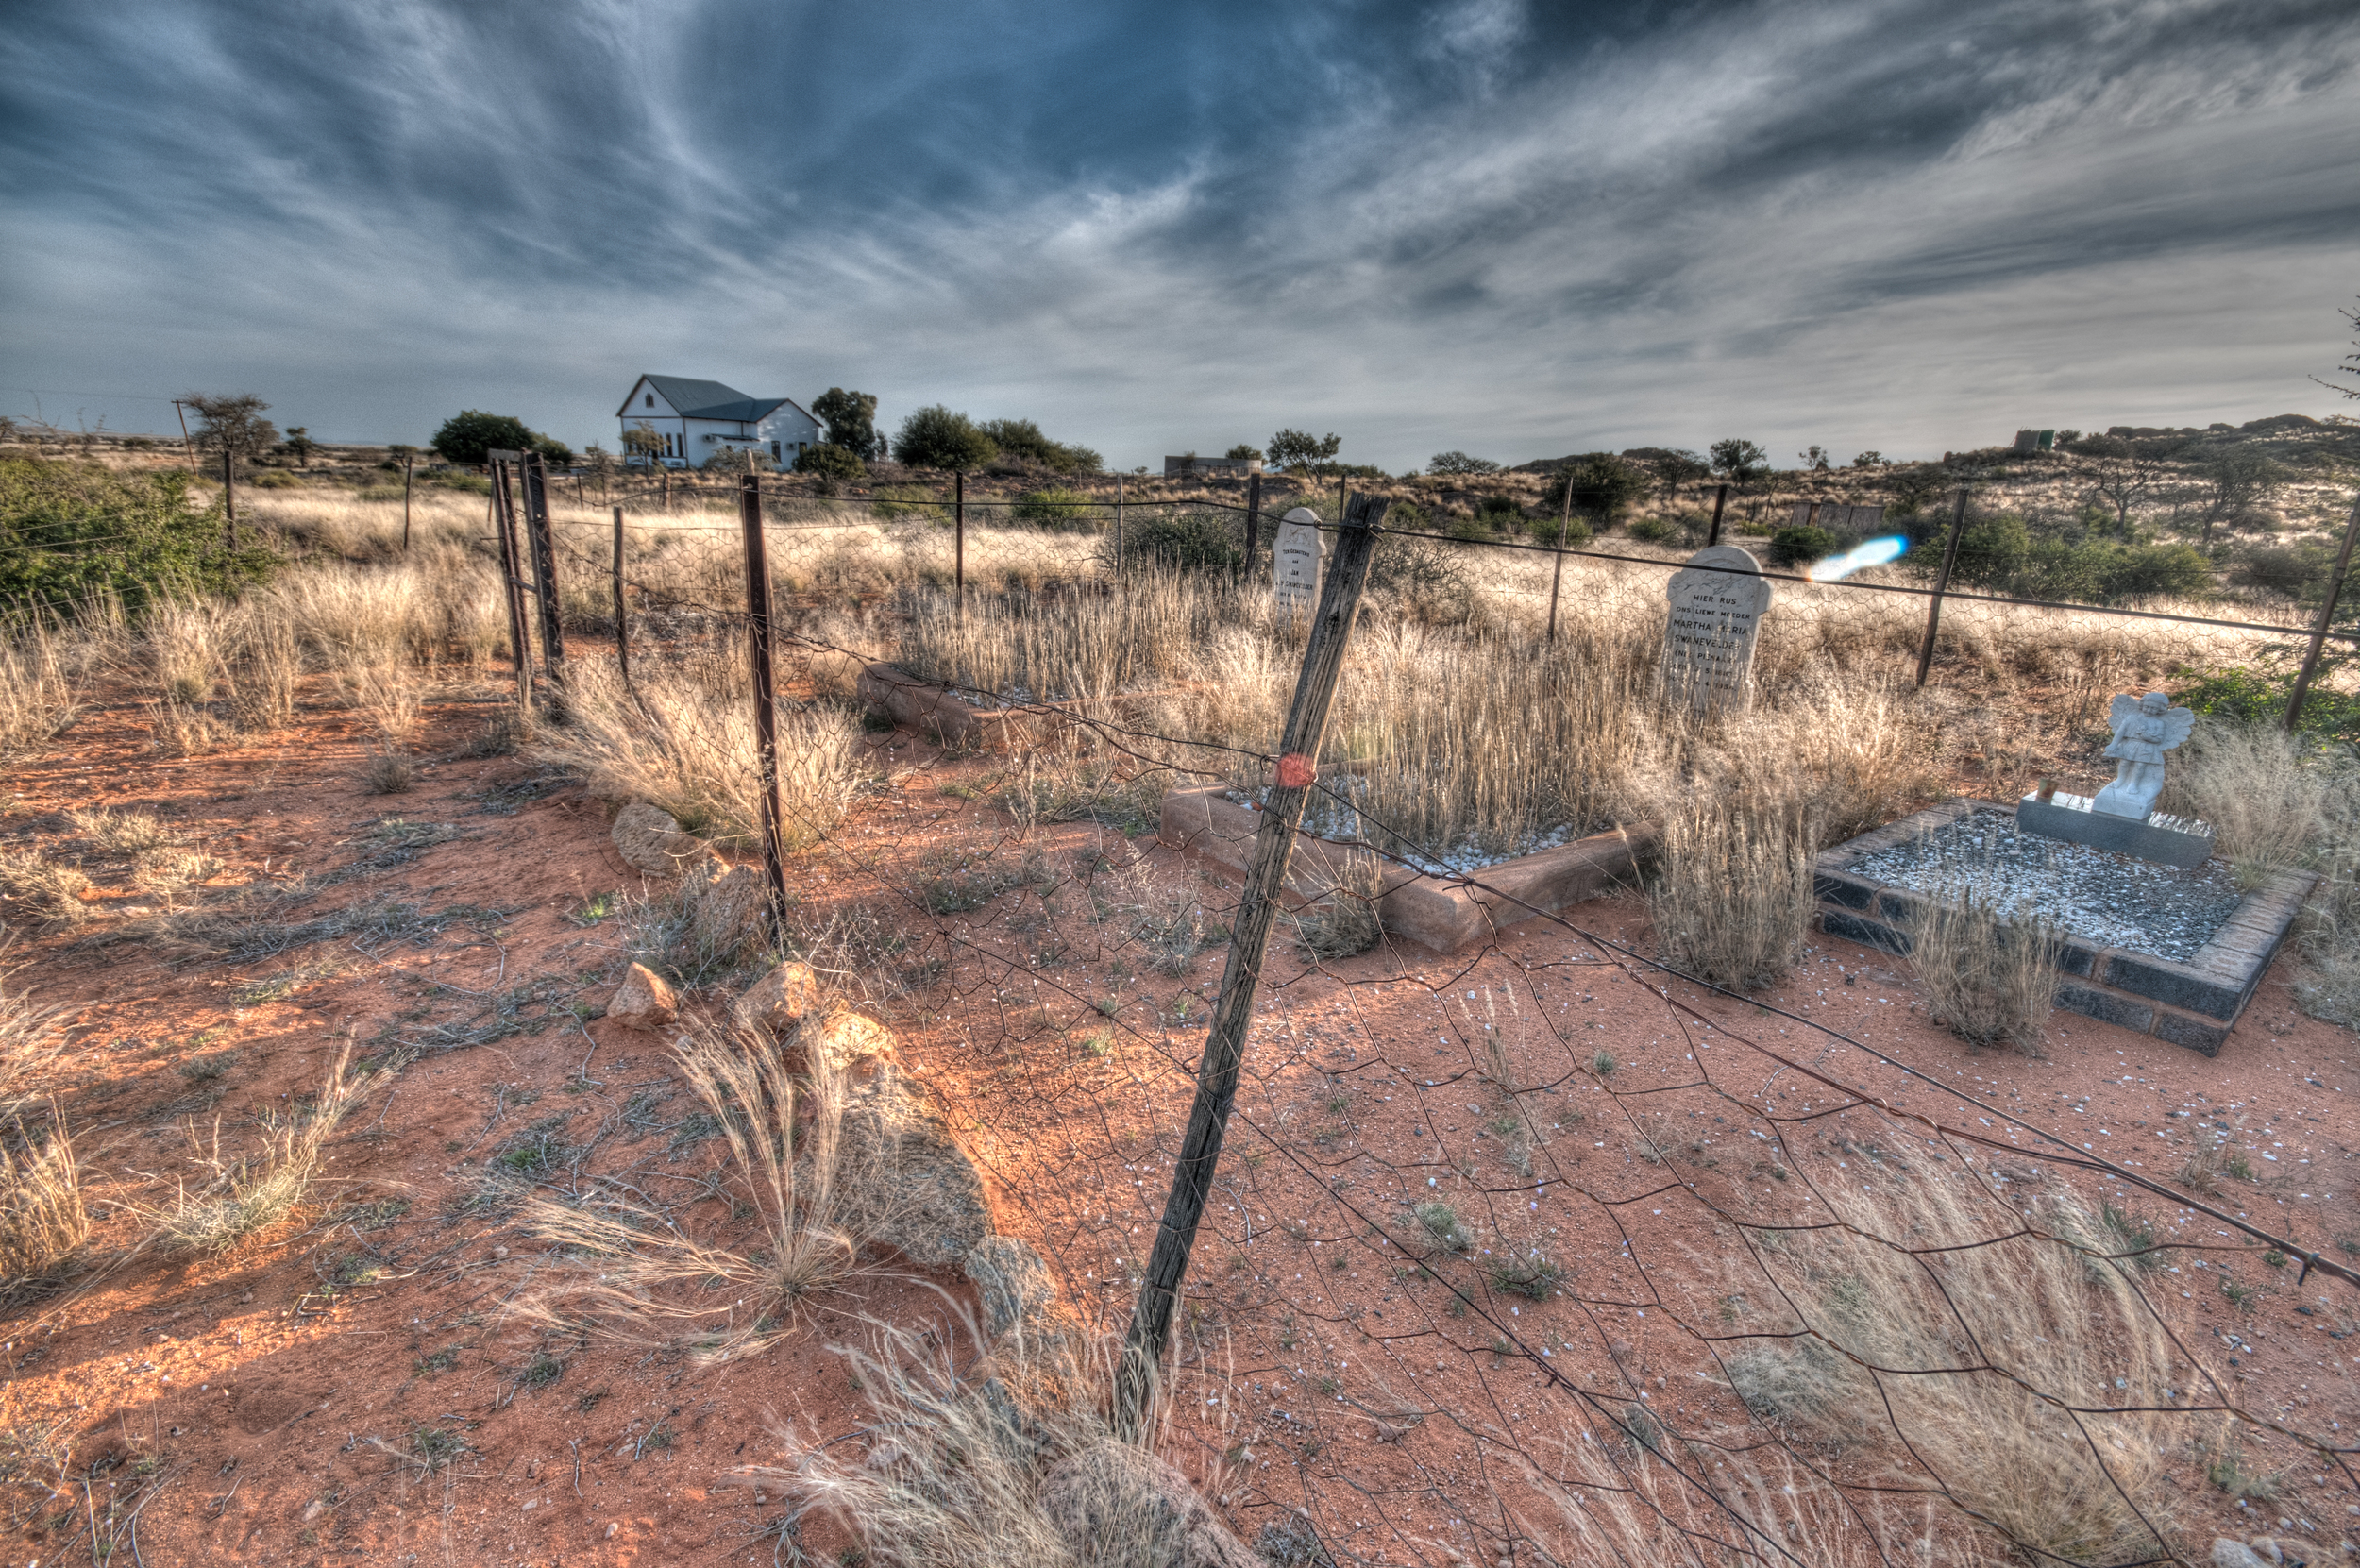 White Farm family graveyard, Grunau, Namibia